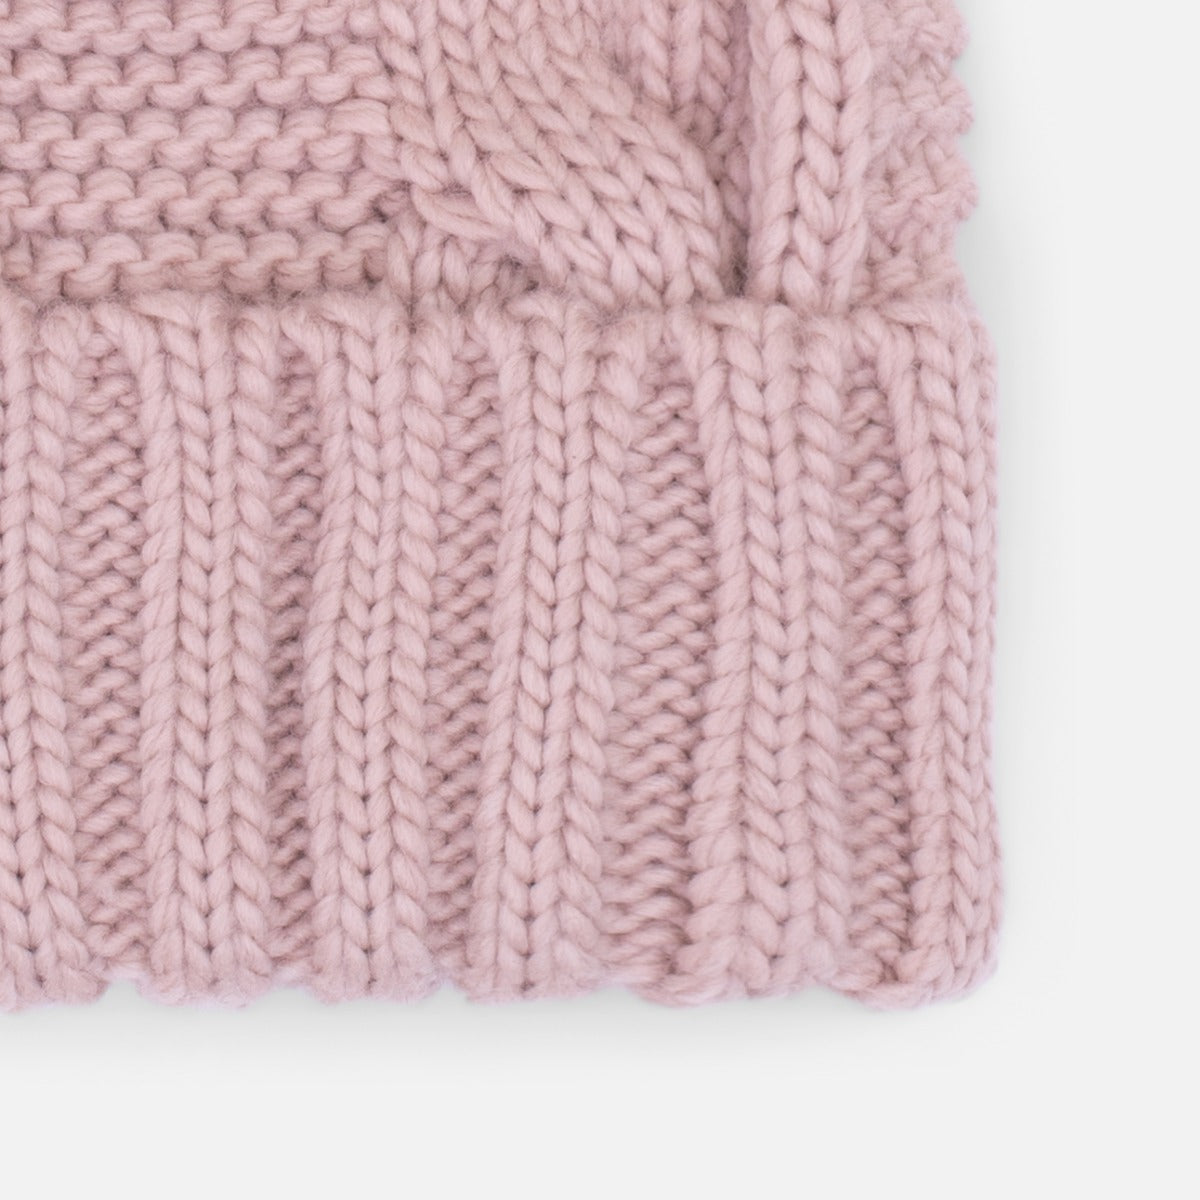 Tuque tricot vieux rose avec pompon amovible